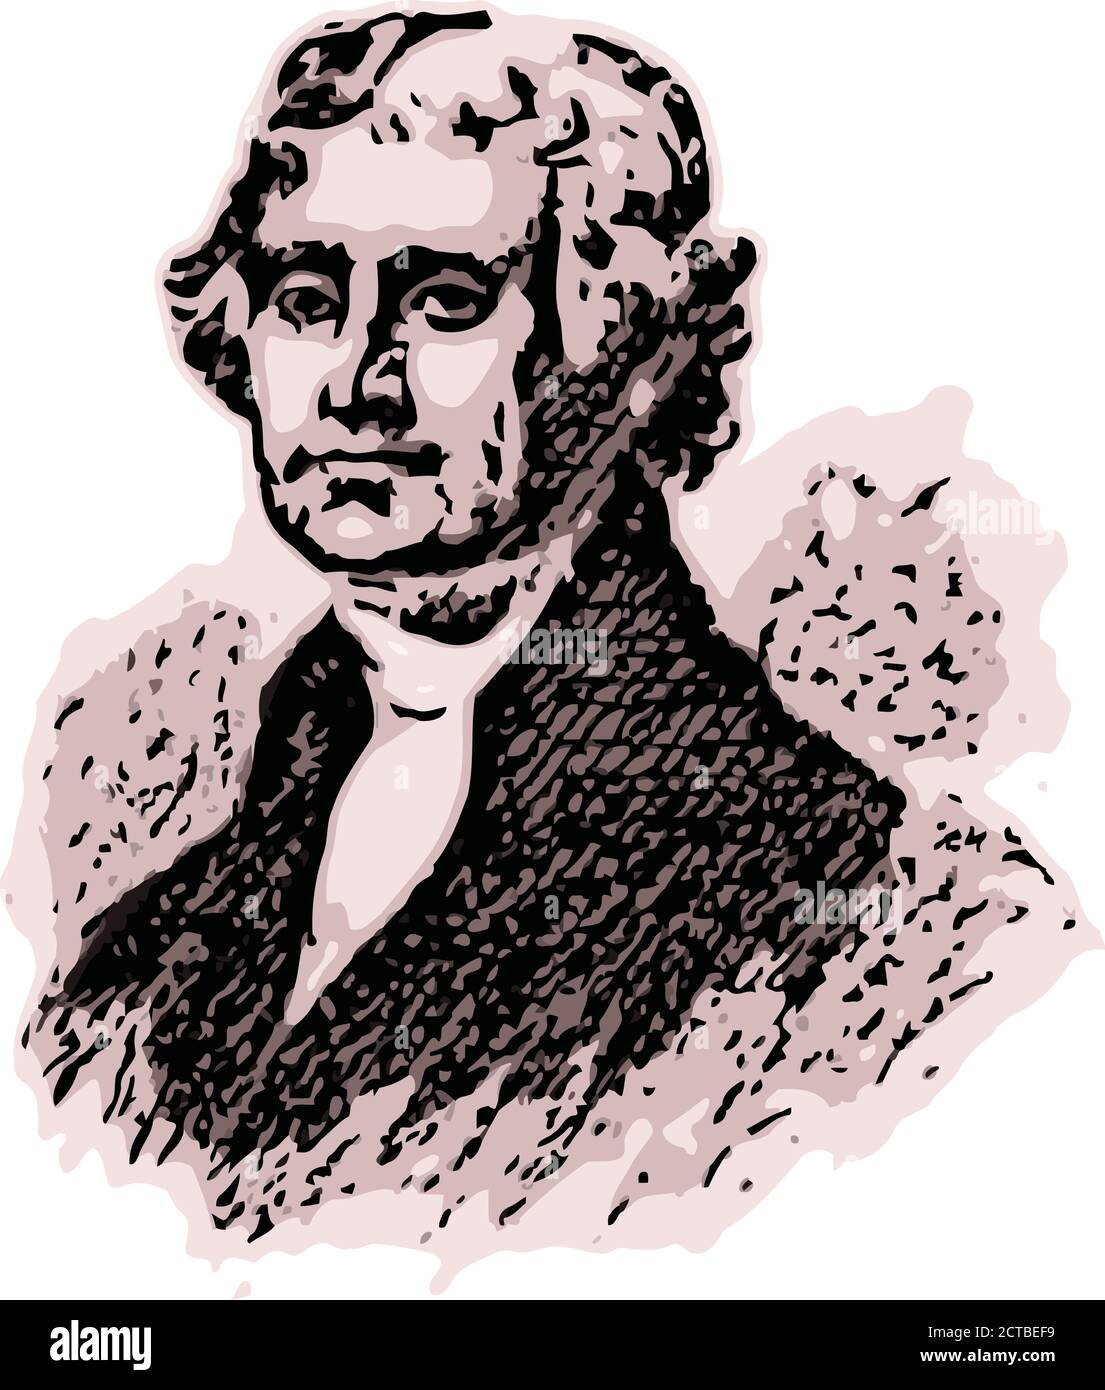 Vektor-Porträt von Präsident Thomas Jefferson. Thomas Jefferson (1743 – 1826) war ein amerikanischer Staatsmann, Diplomat, Rechtsanwalt, Architekt, Philosoph und Stock Vektor